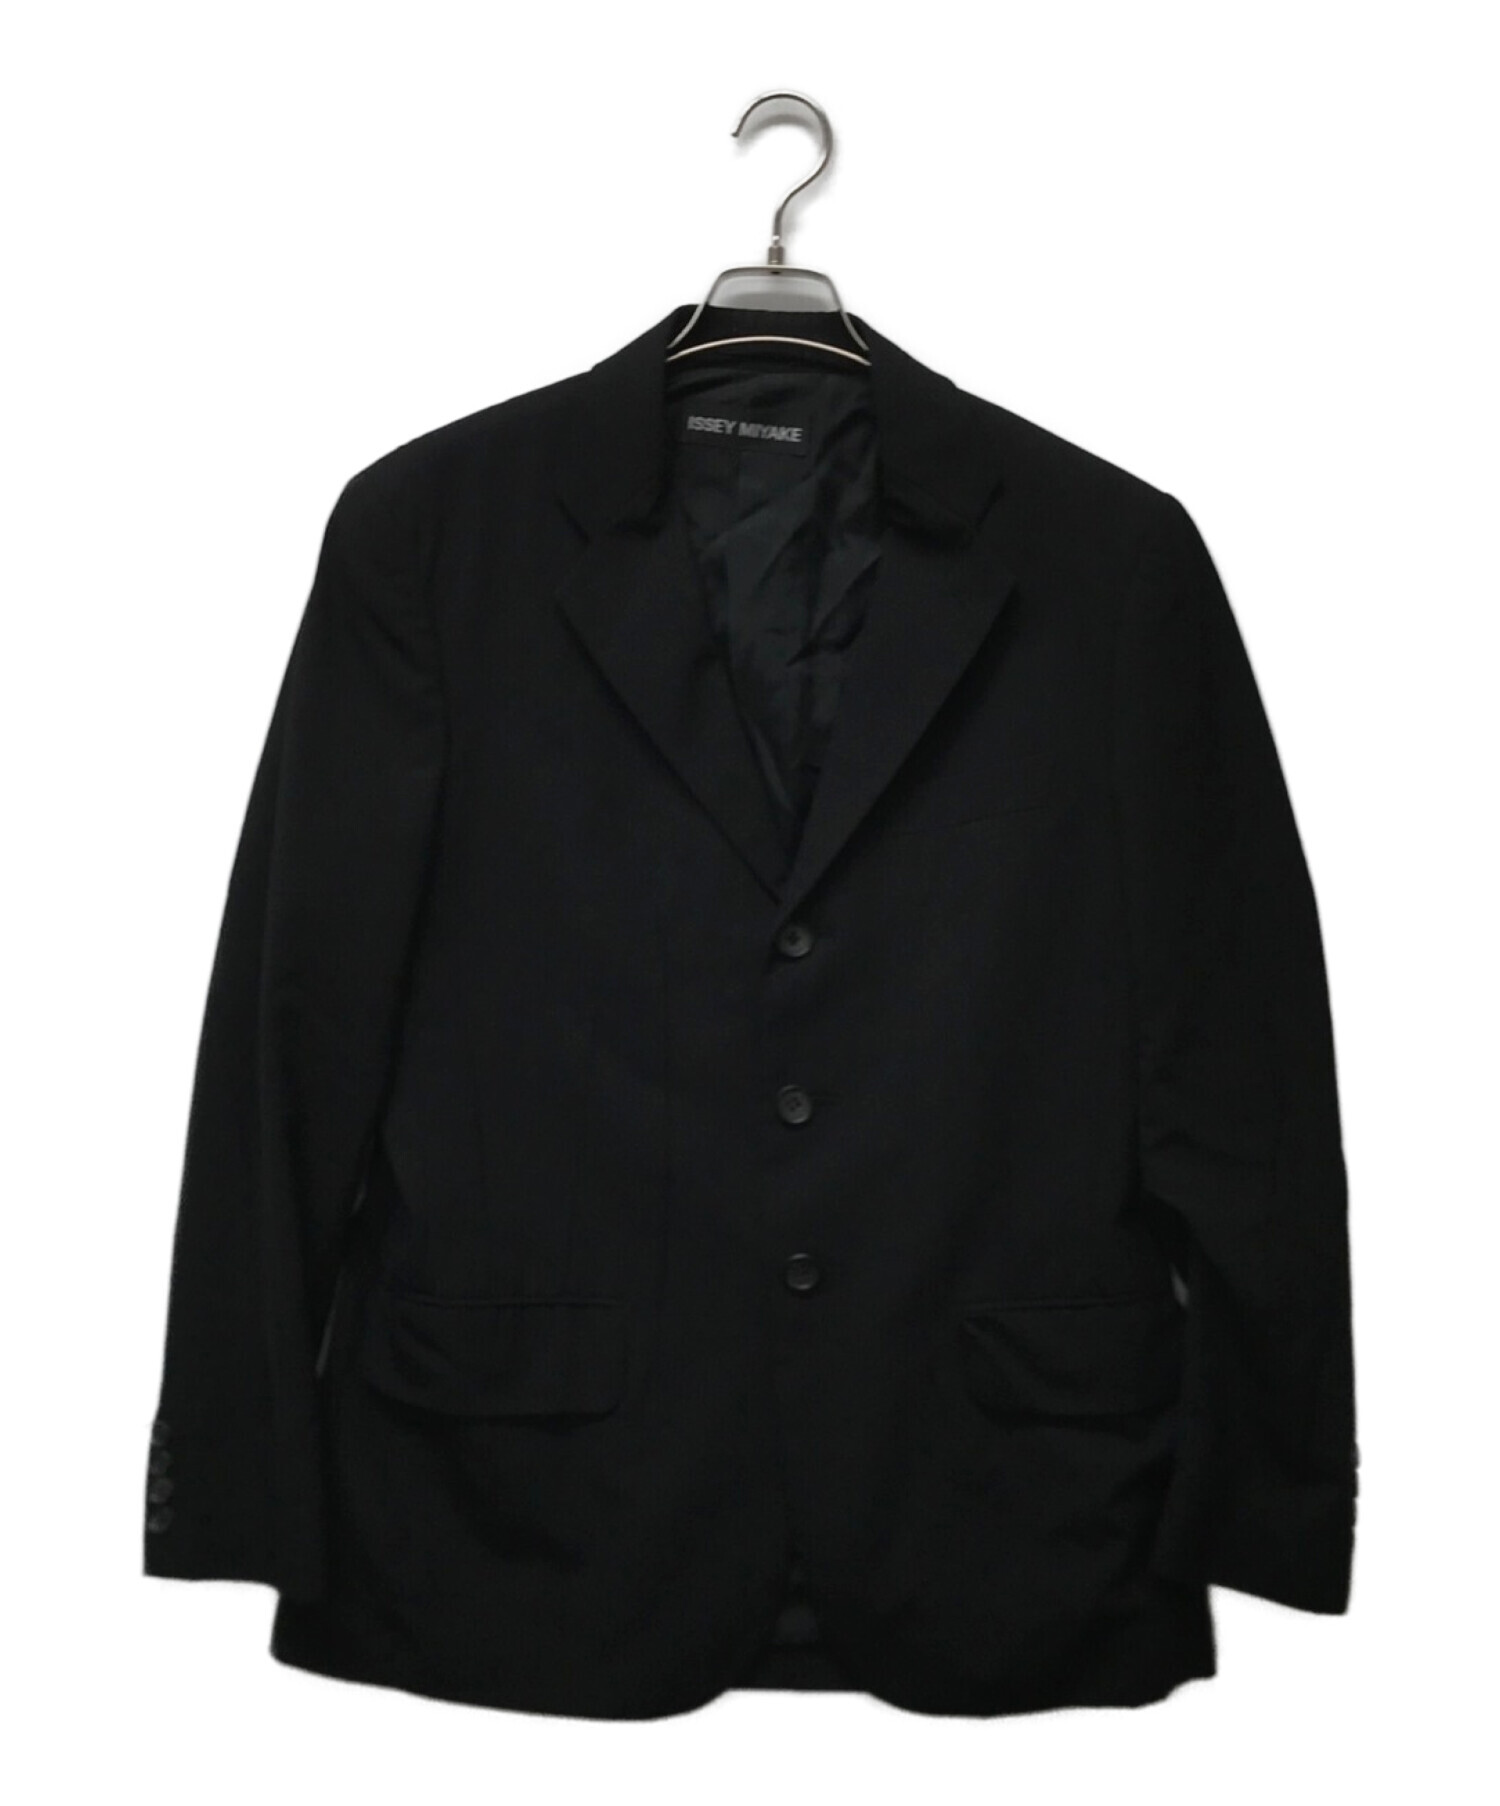 ISSEY MIYAKE MEN (イッセイミヤケメン) マルチダーツデザインテーラードジャケット ブラック サイズ:2